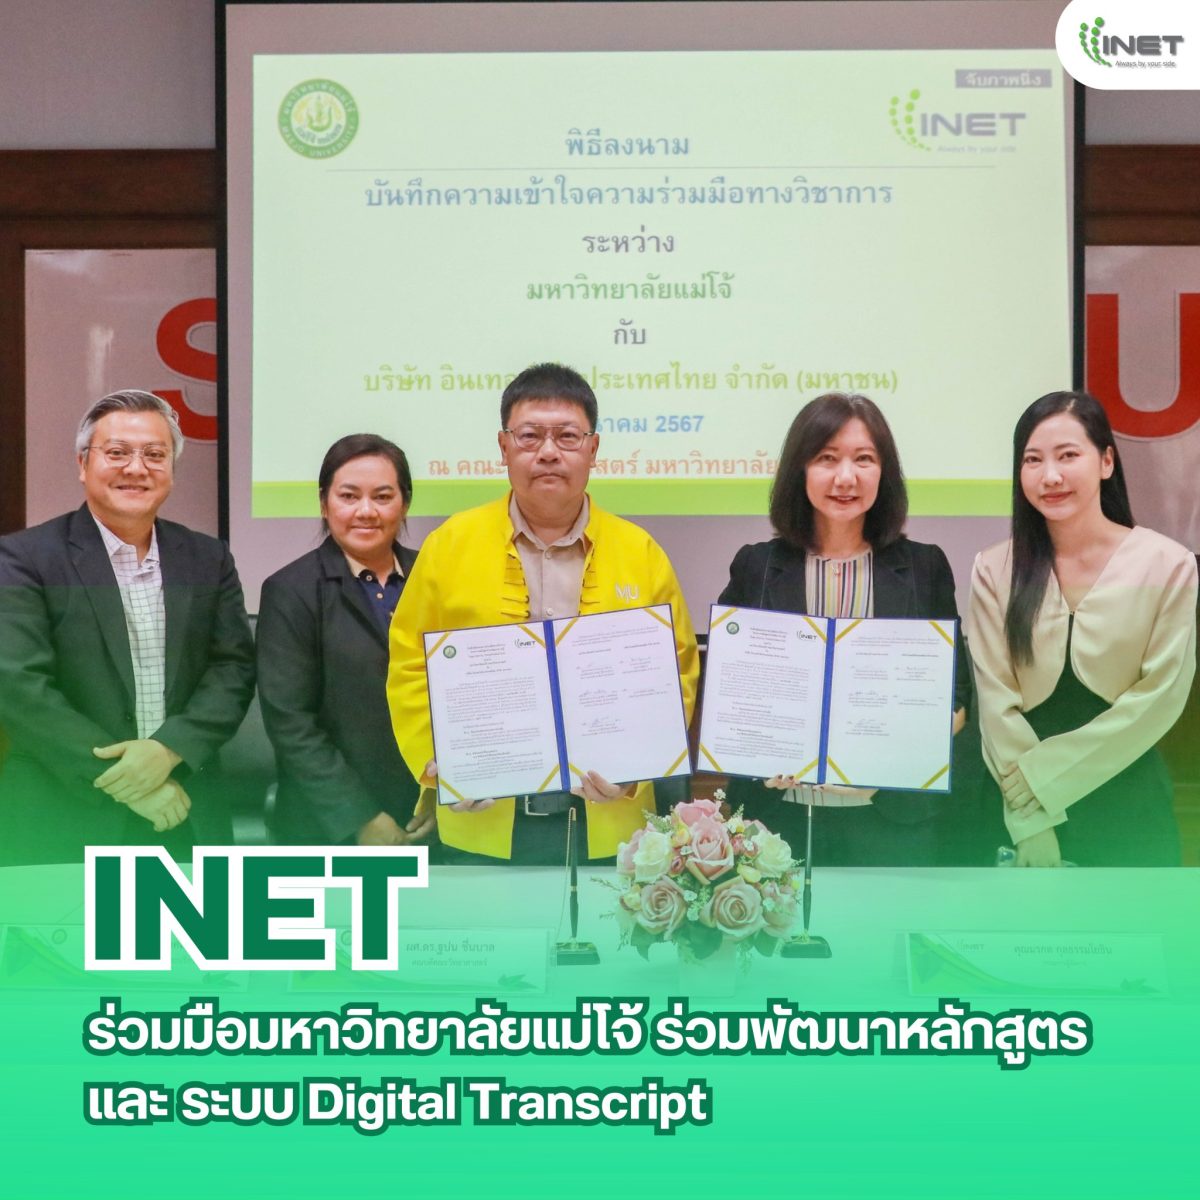 INET ร่วมมือ มหาวิทยาลัยแม่โจ้ ร่วมพัฒนาหลักสูตร และ ระบบ Digital Transcript